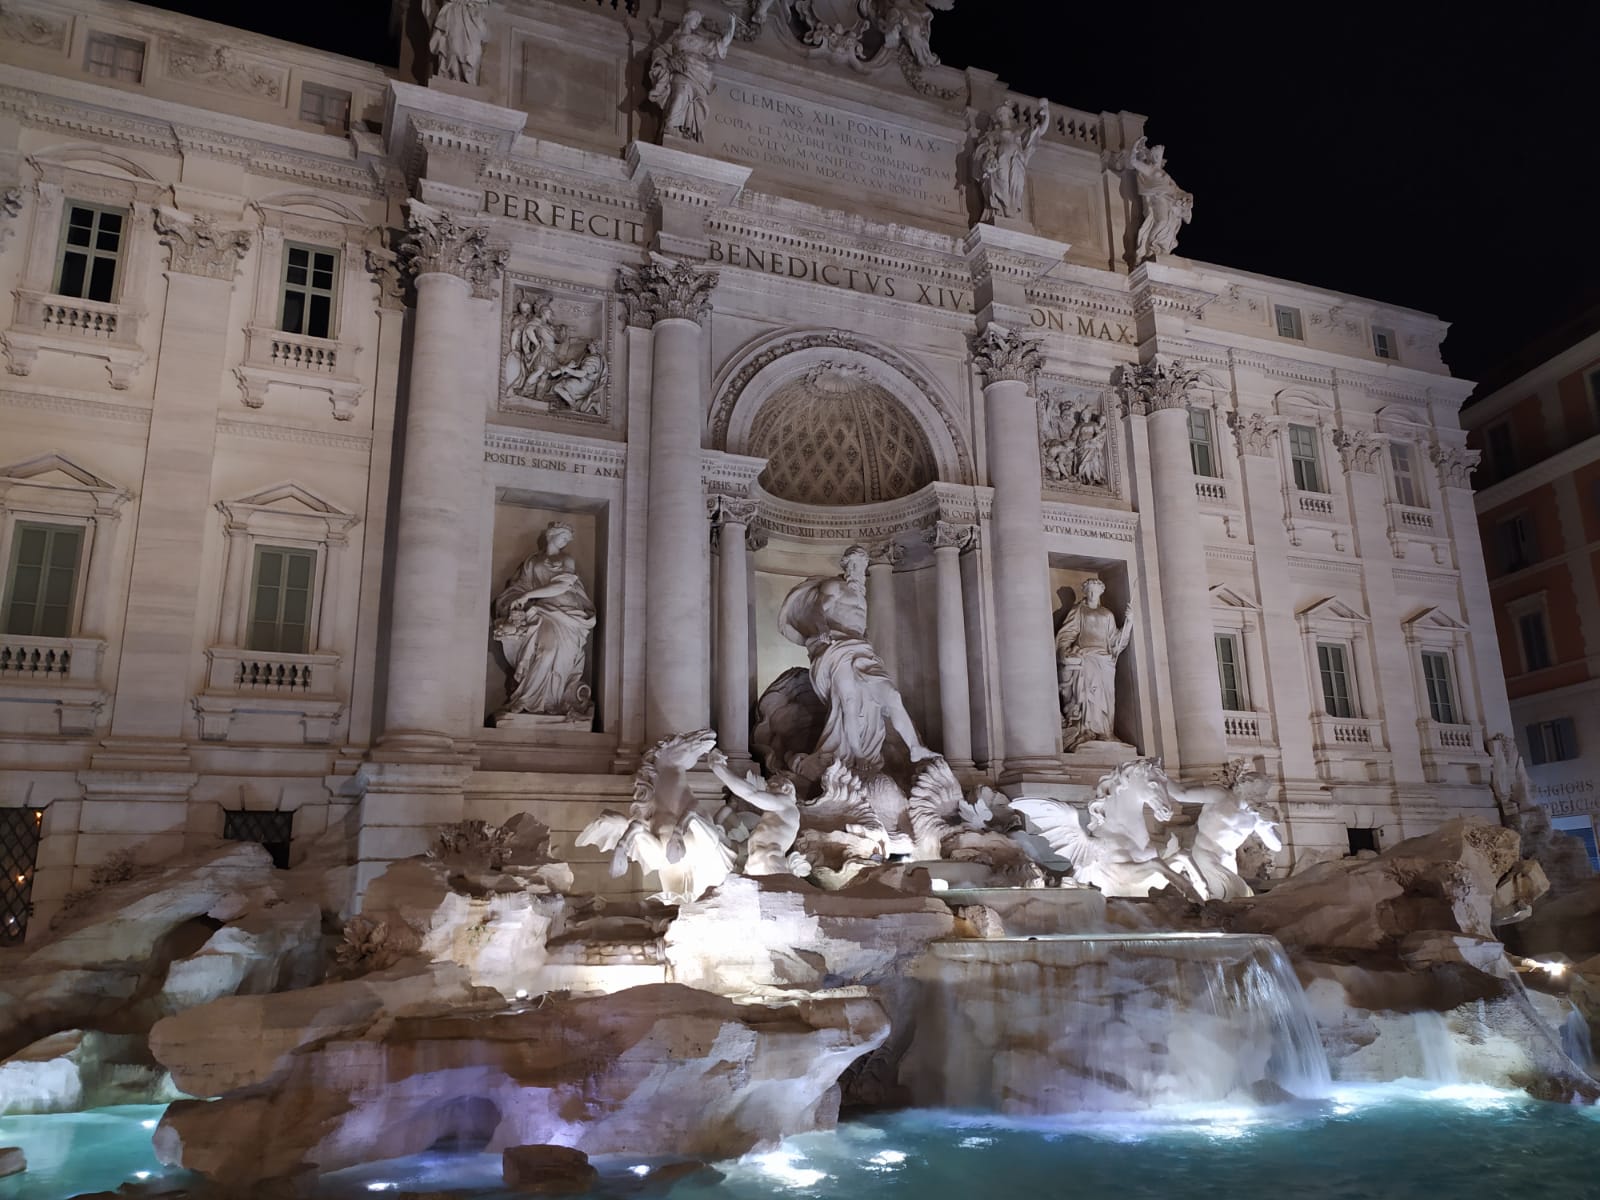 Comprar un billete para visitar el Coliseo de Roma gratis